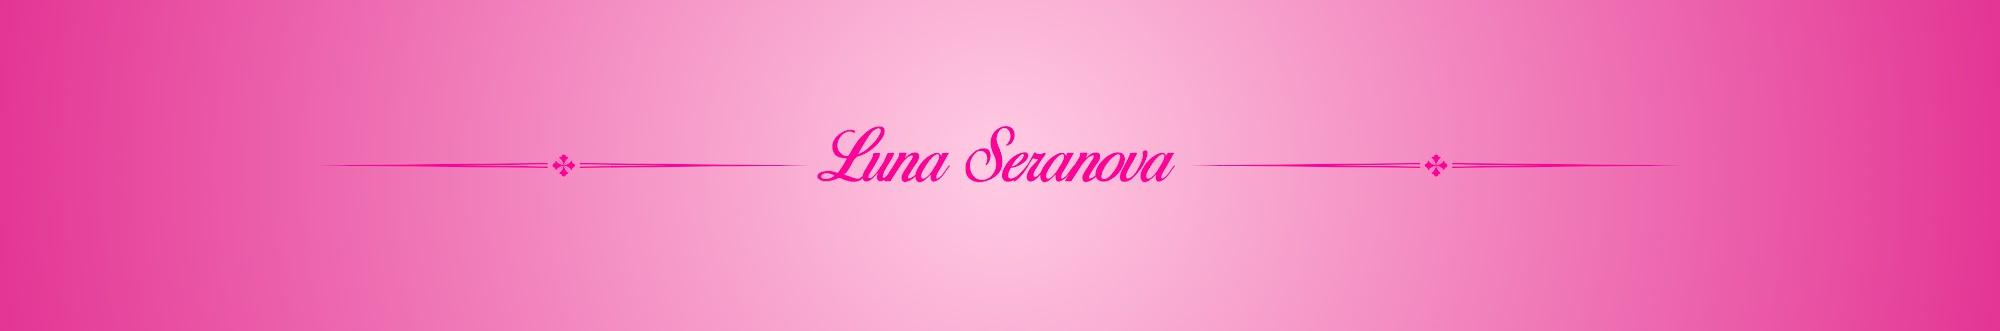 Luna Seranova